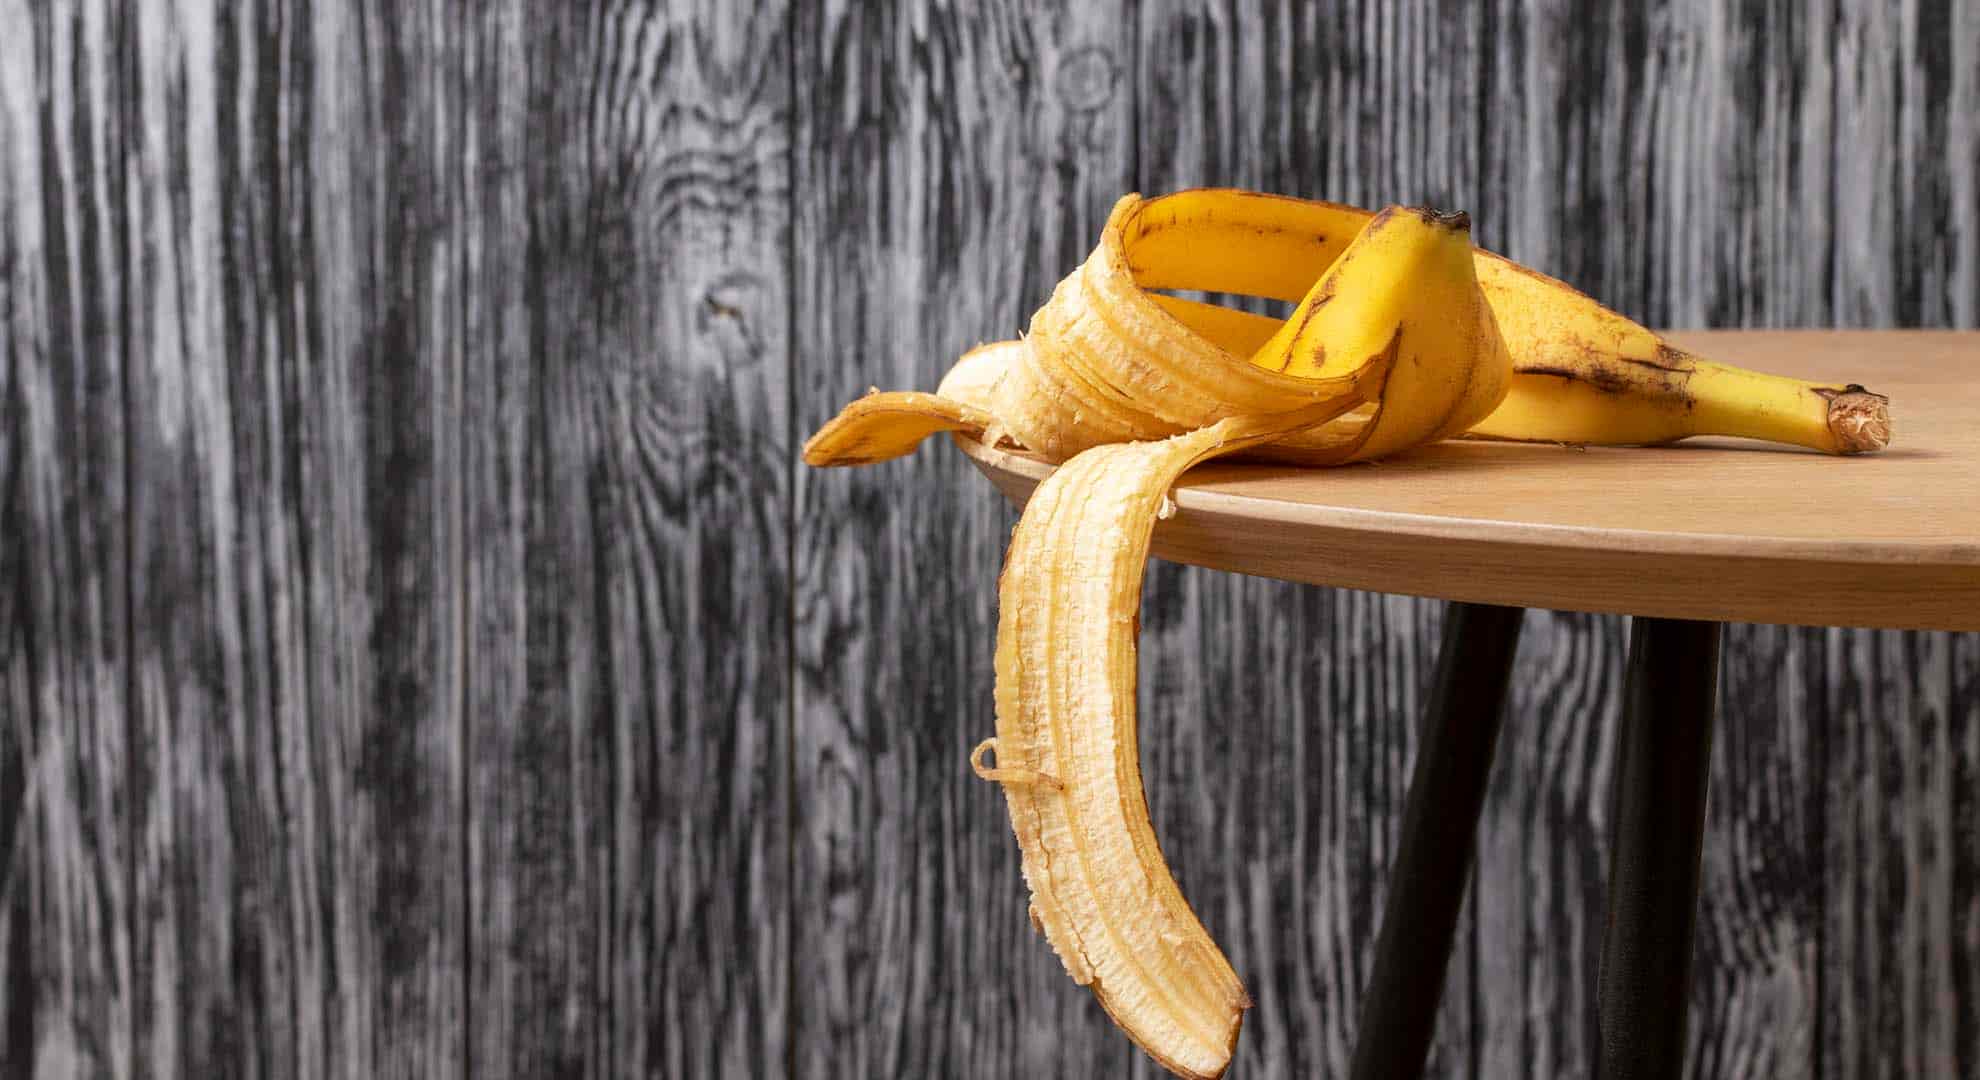 Banana peel on a table